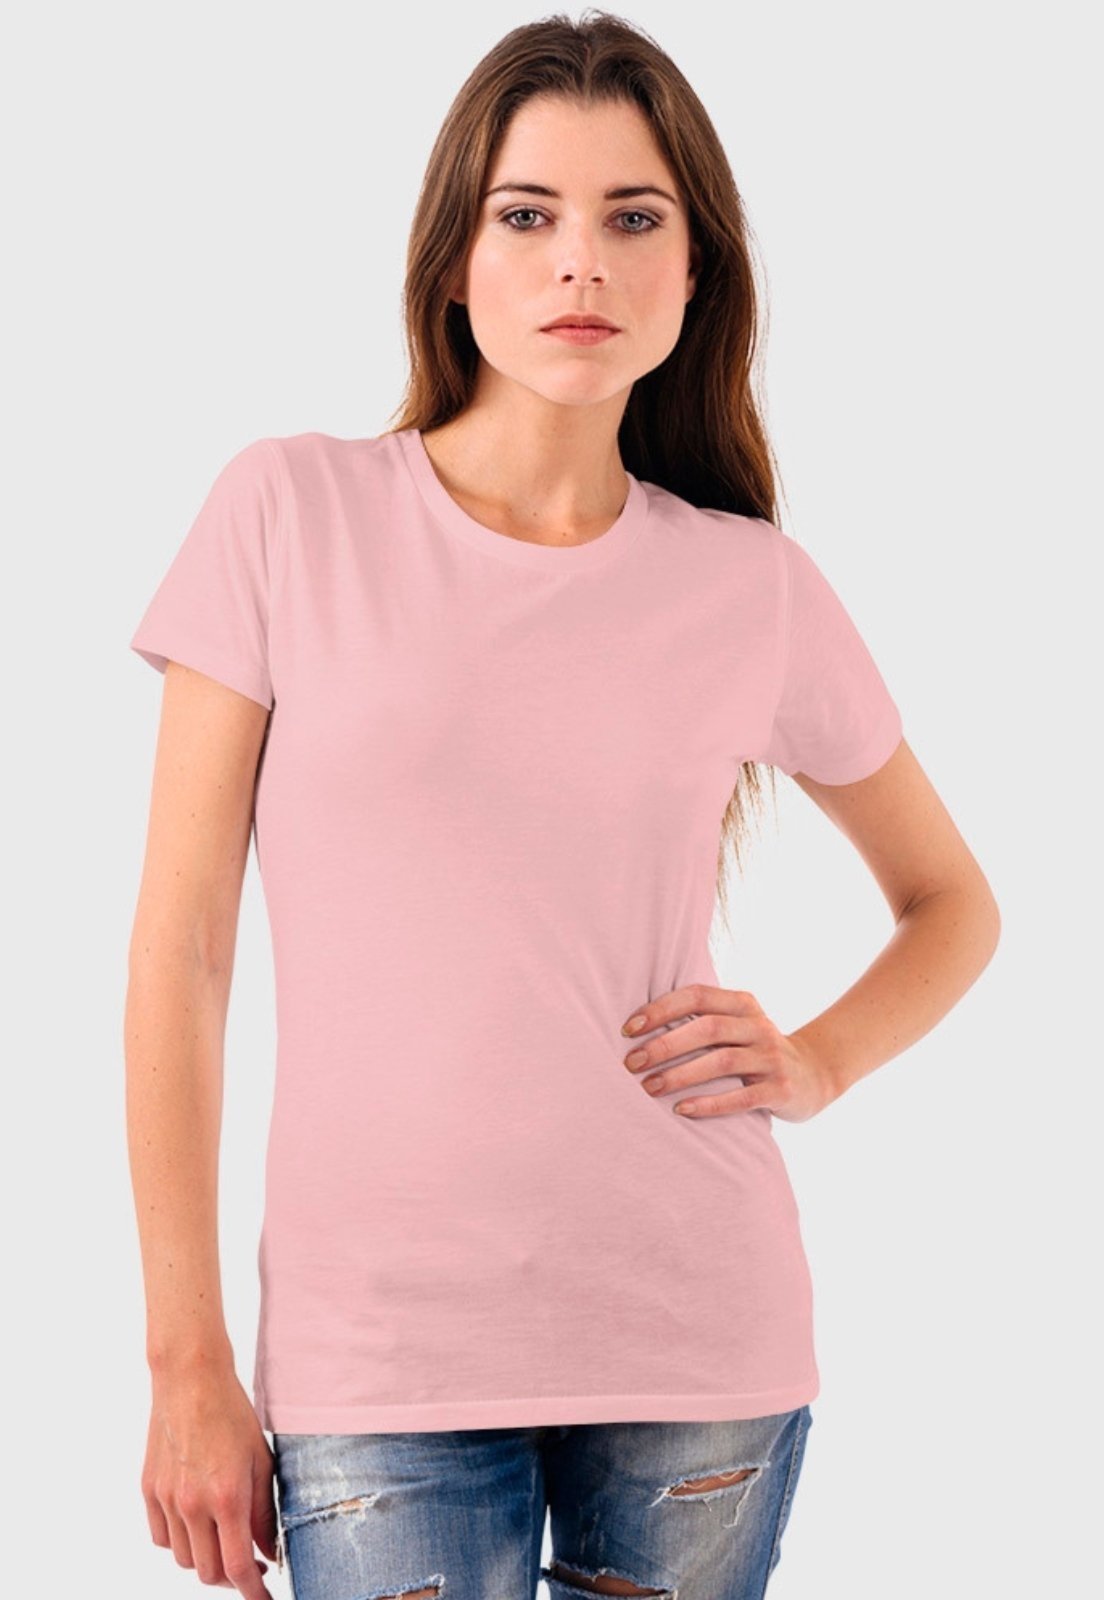 Camiseta Feminina Rosa Lisa Algodão Premium Benellys - Compre Agora